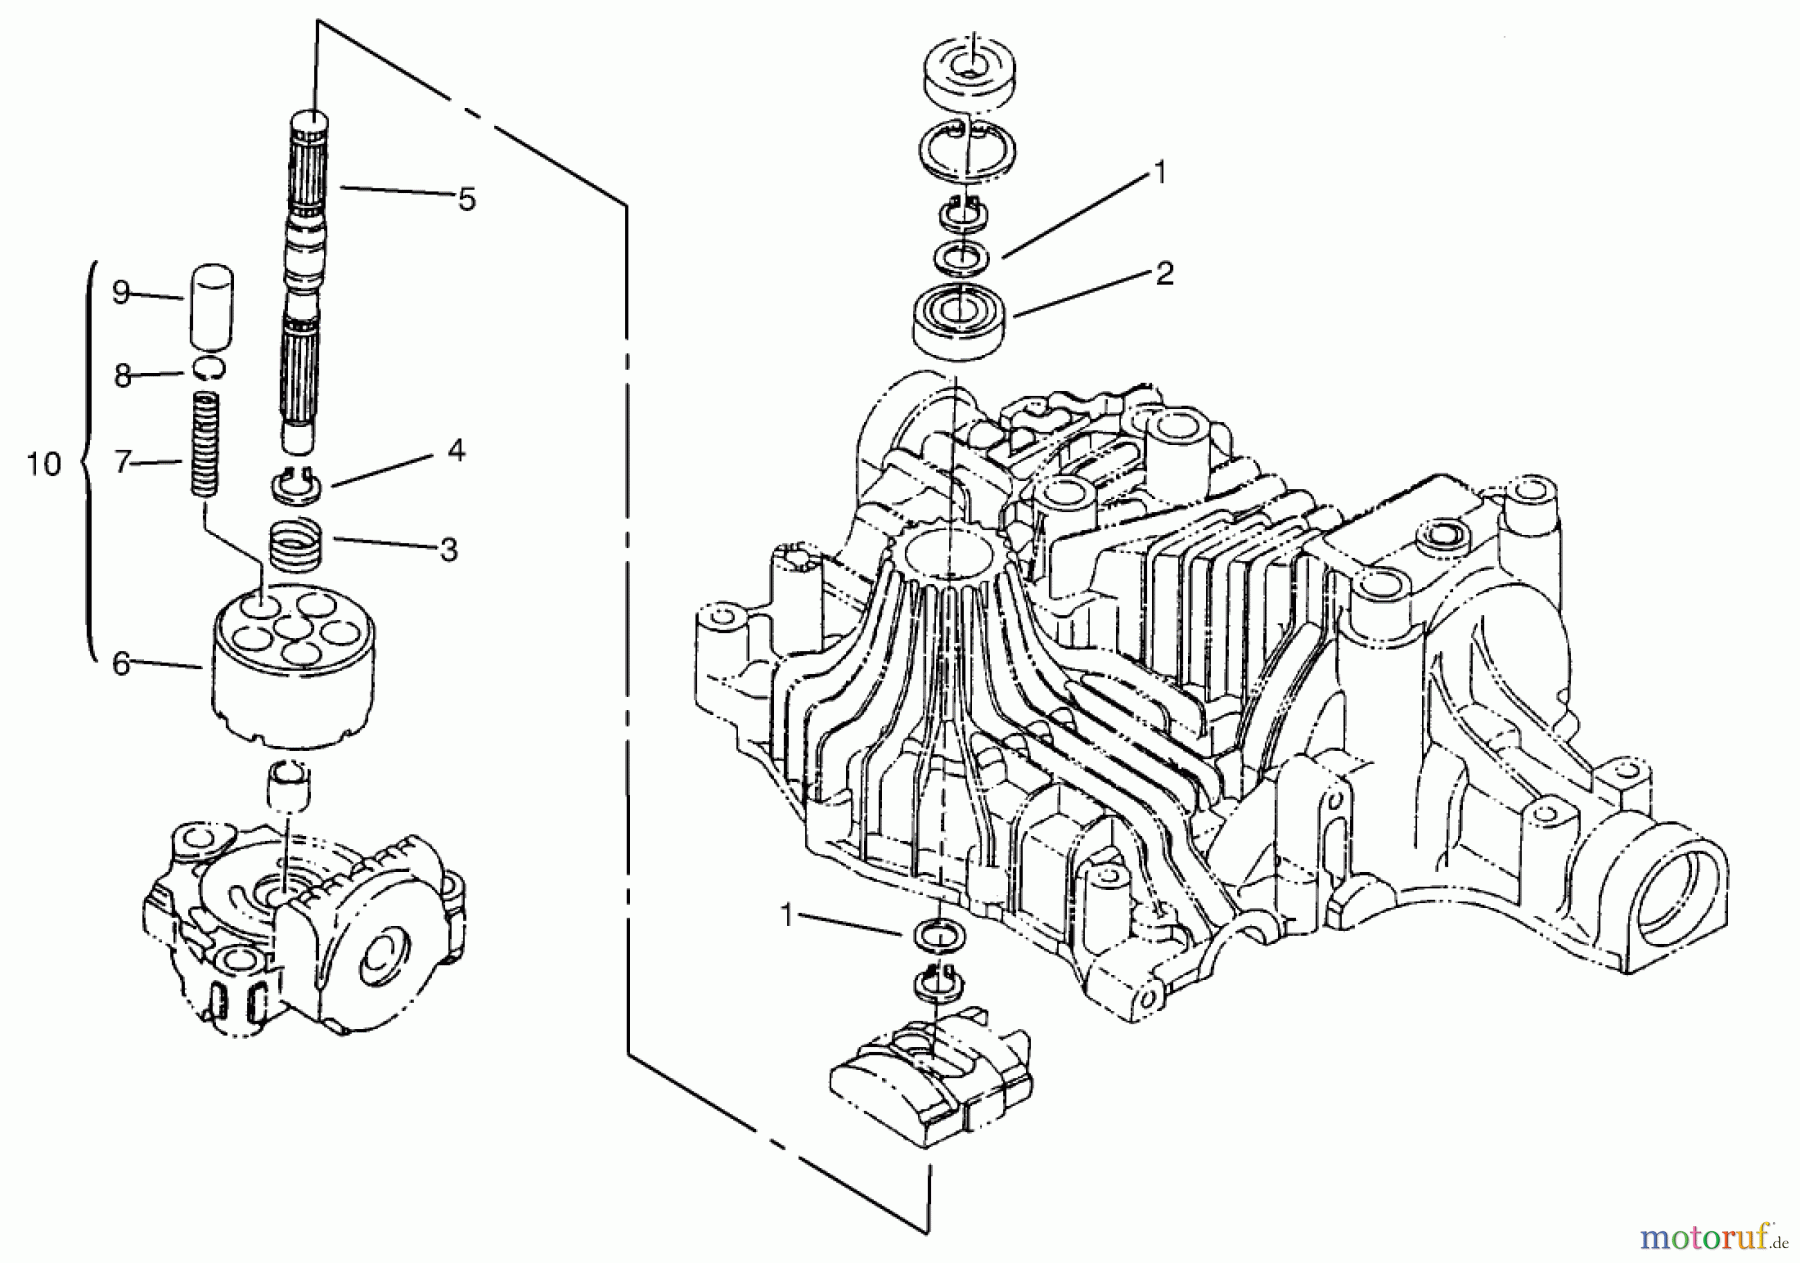  Toro Neu Mowers, Lawn & Garden Tractor Seite 1 72104 (267-H) - Toro 267-H Lawn and Garden Tractor, 1997 (7900001-7999999) PUMP SHAFT